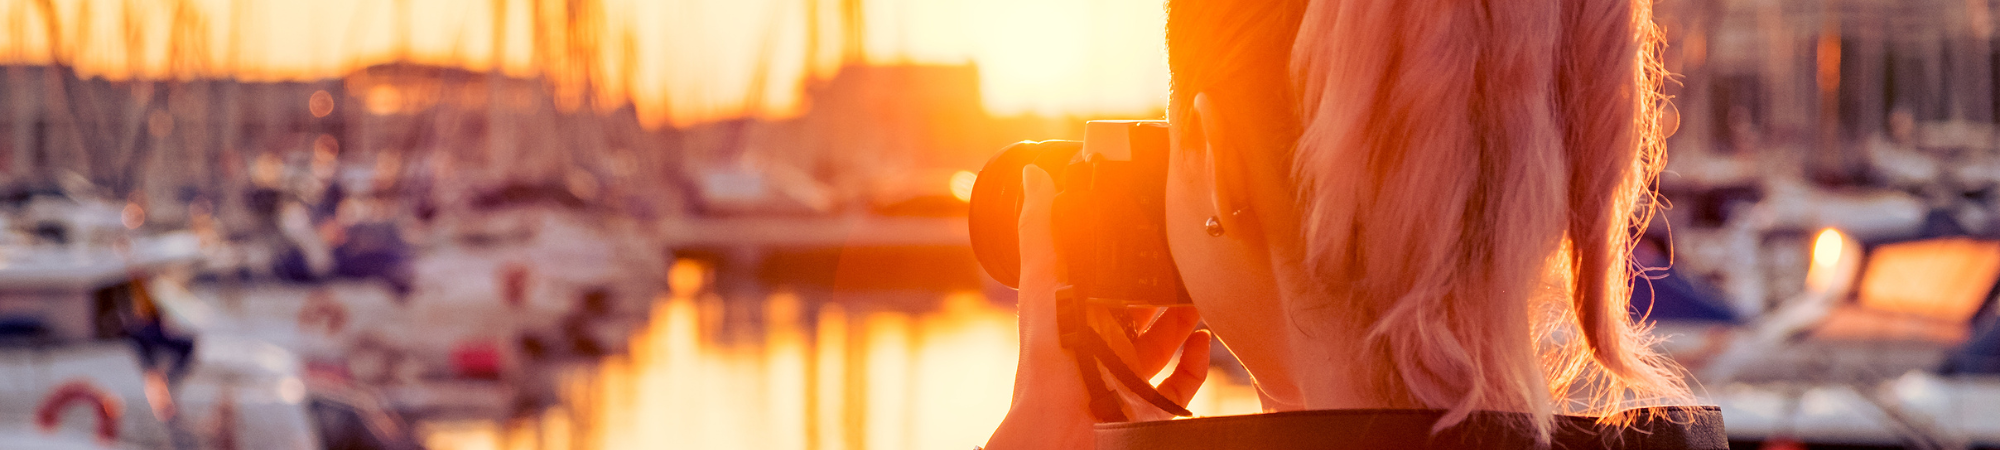 appareil photo port paimpol illuminé guirlandes lumineuses coucher soleil